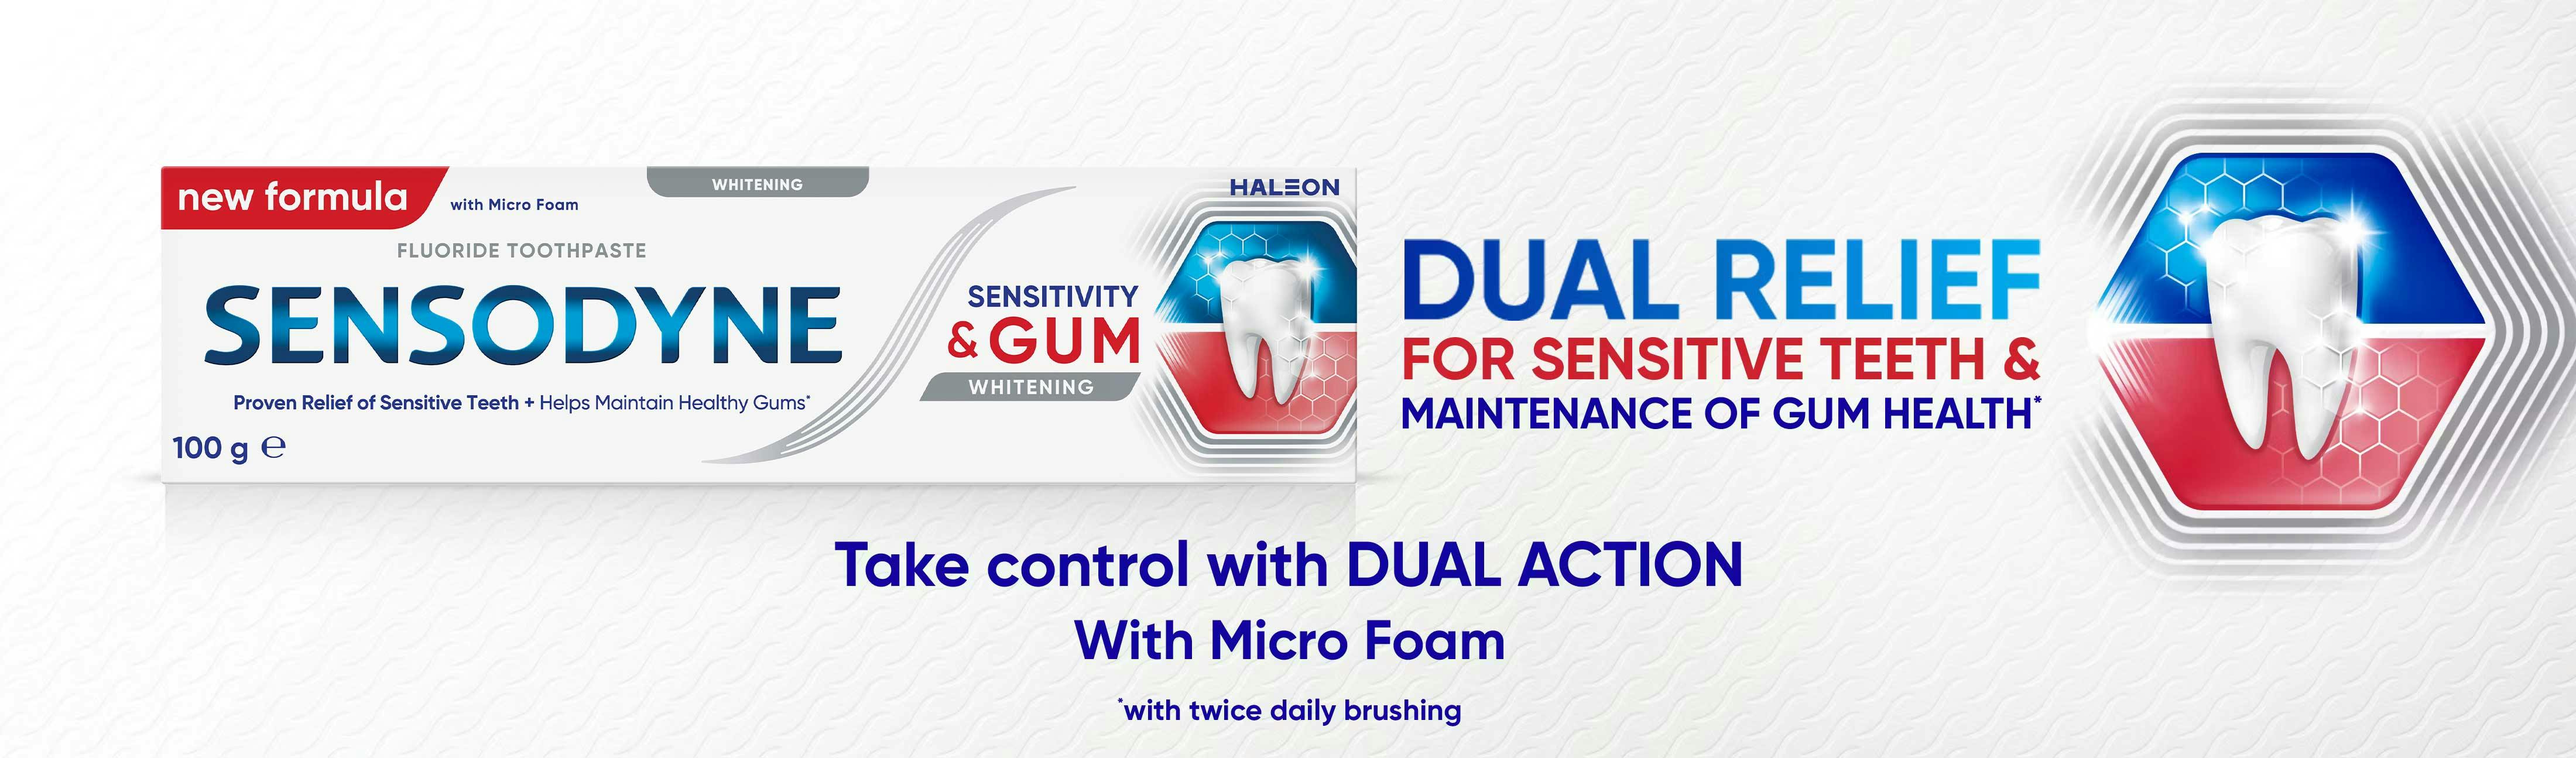 Sensodyne Sensitivity & Gum Toothpaste Whitening Banner